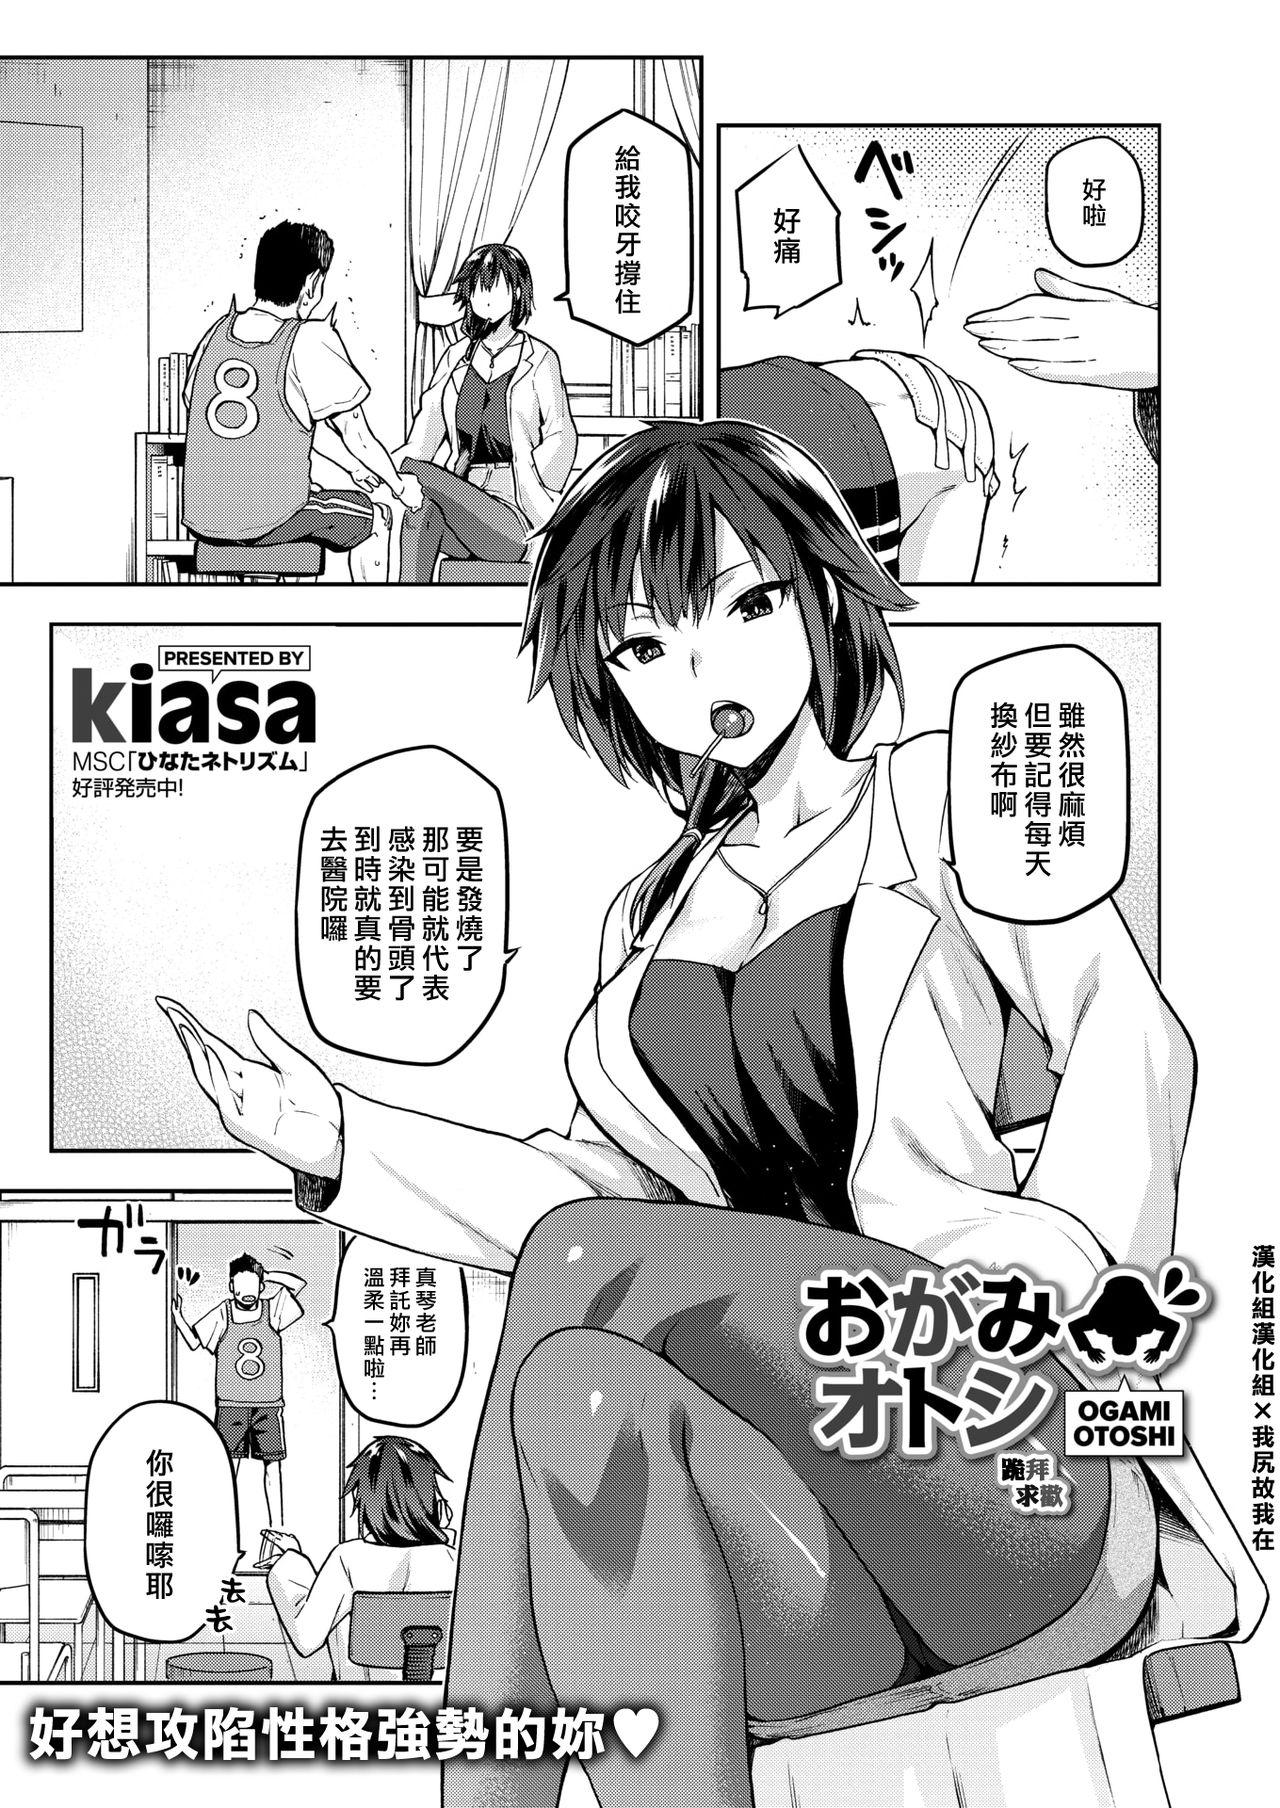 Upskirt Ogamiotoshi Pussy Fucking - Page 1